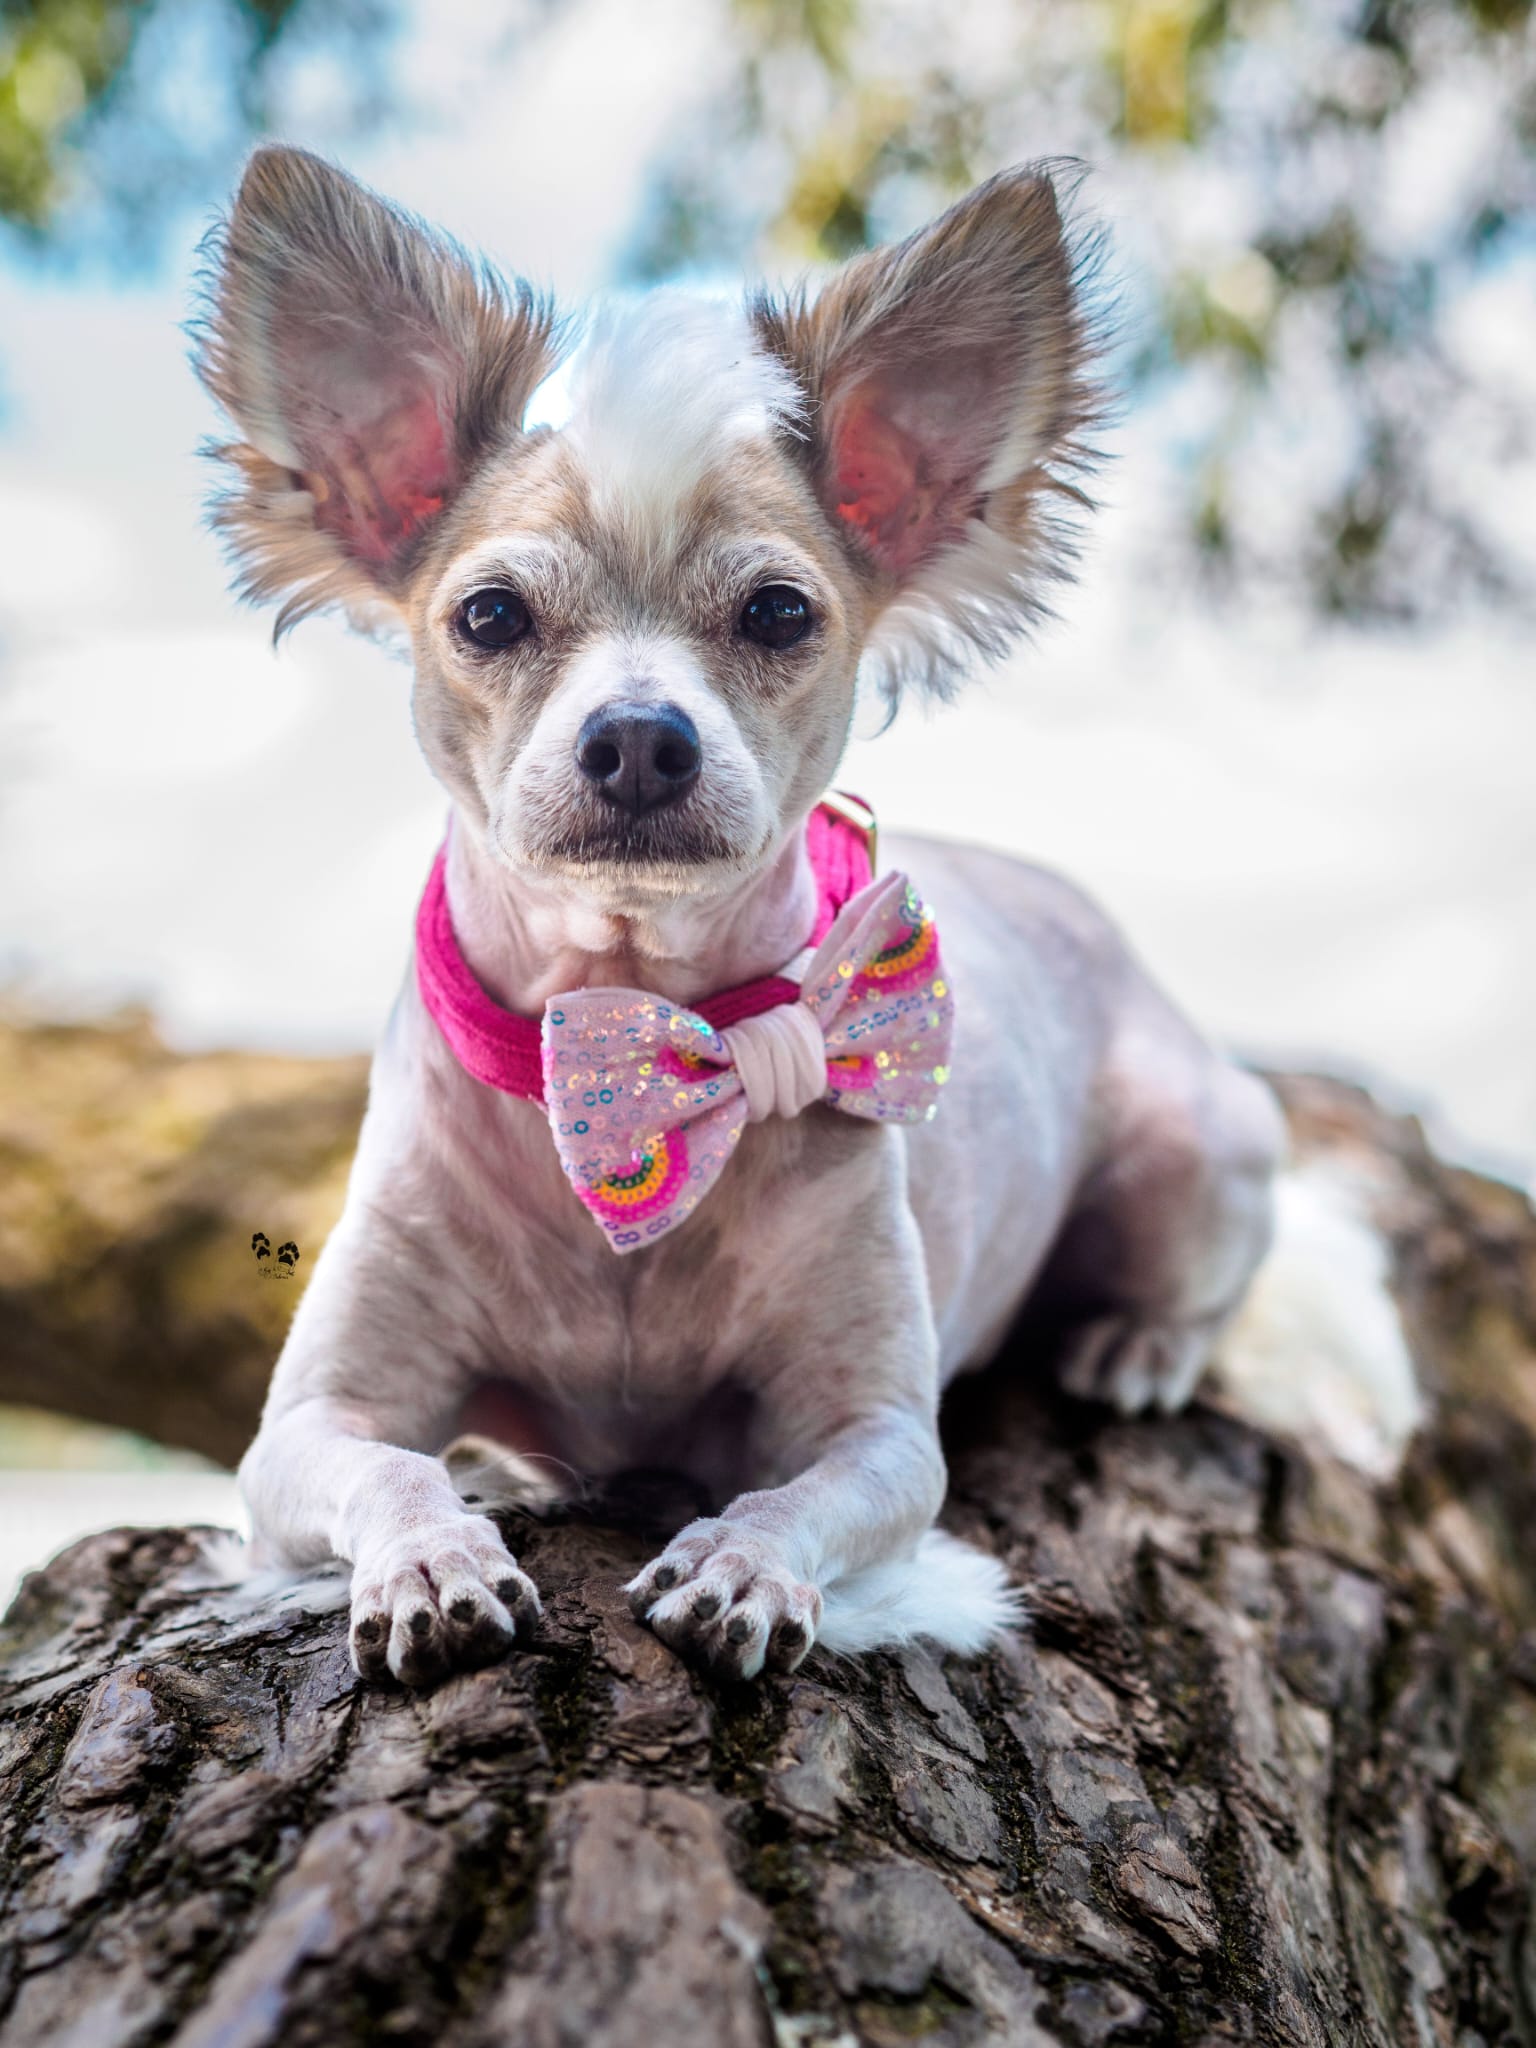 Hundemodel trägt Hundeschleife in rosa mit Pailletten und Regenbogen beim Fotoshooting